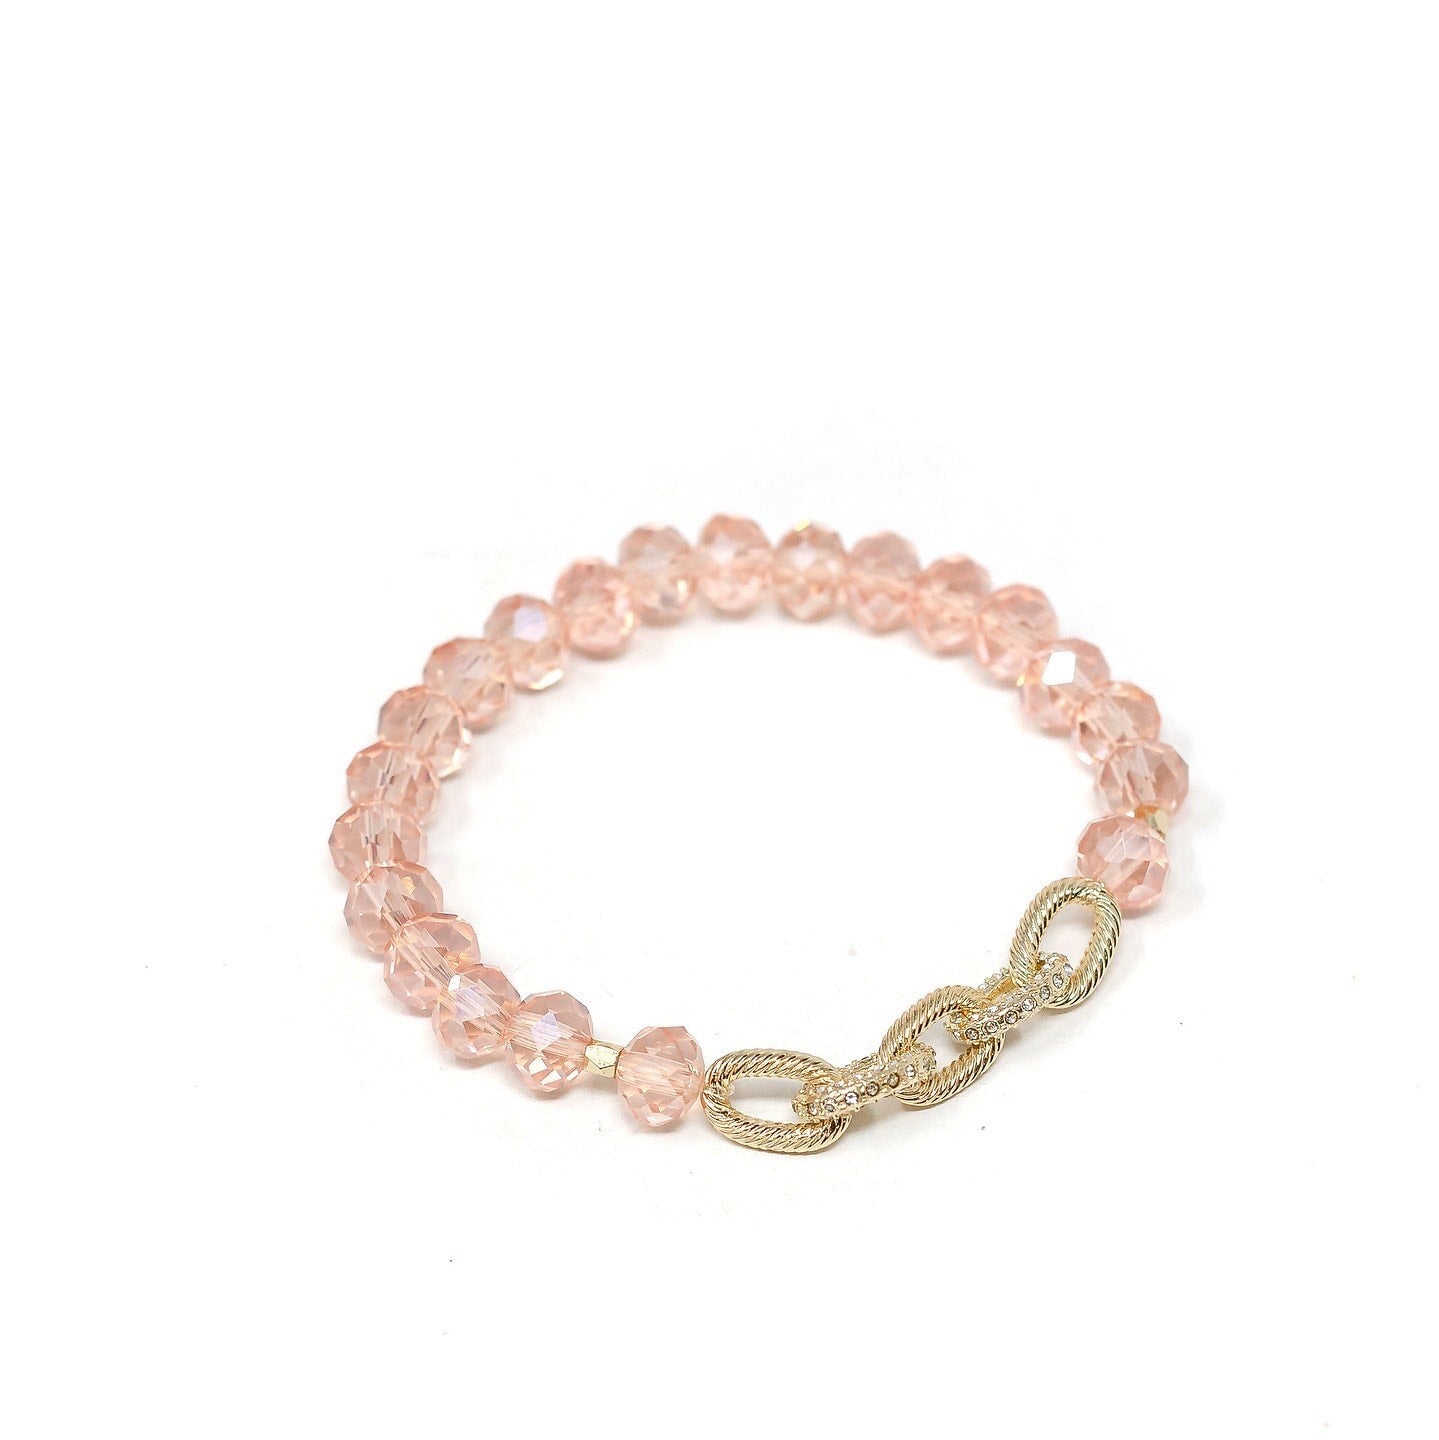 Silicone Keyring Bracelet - Choose Saying - Pink Posh Co